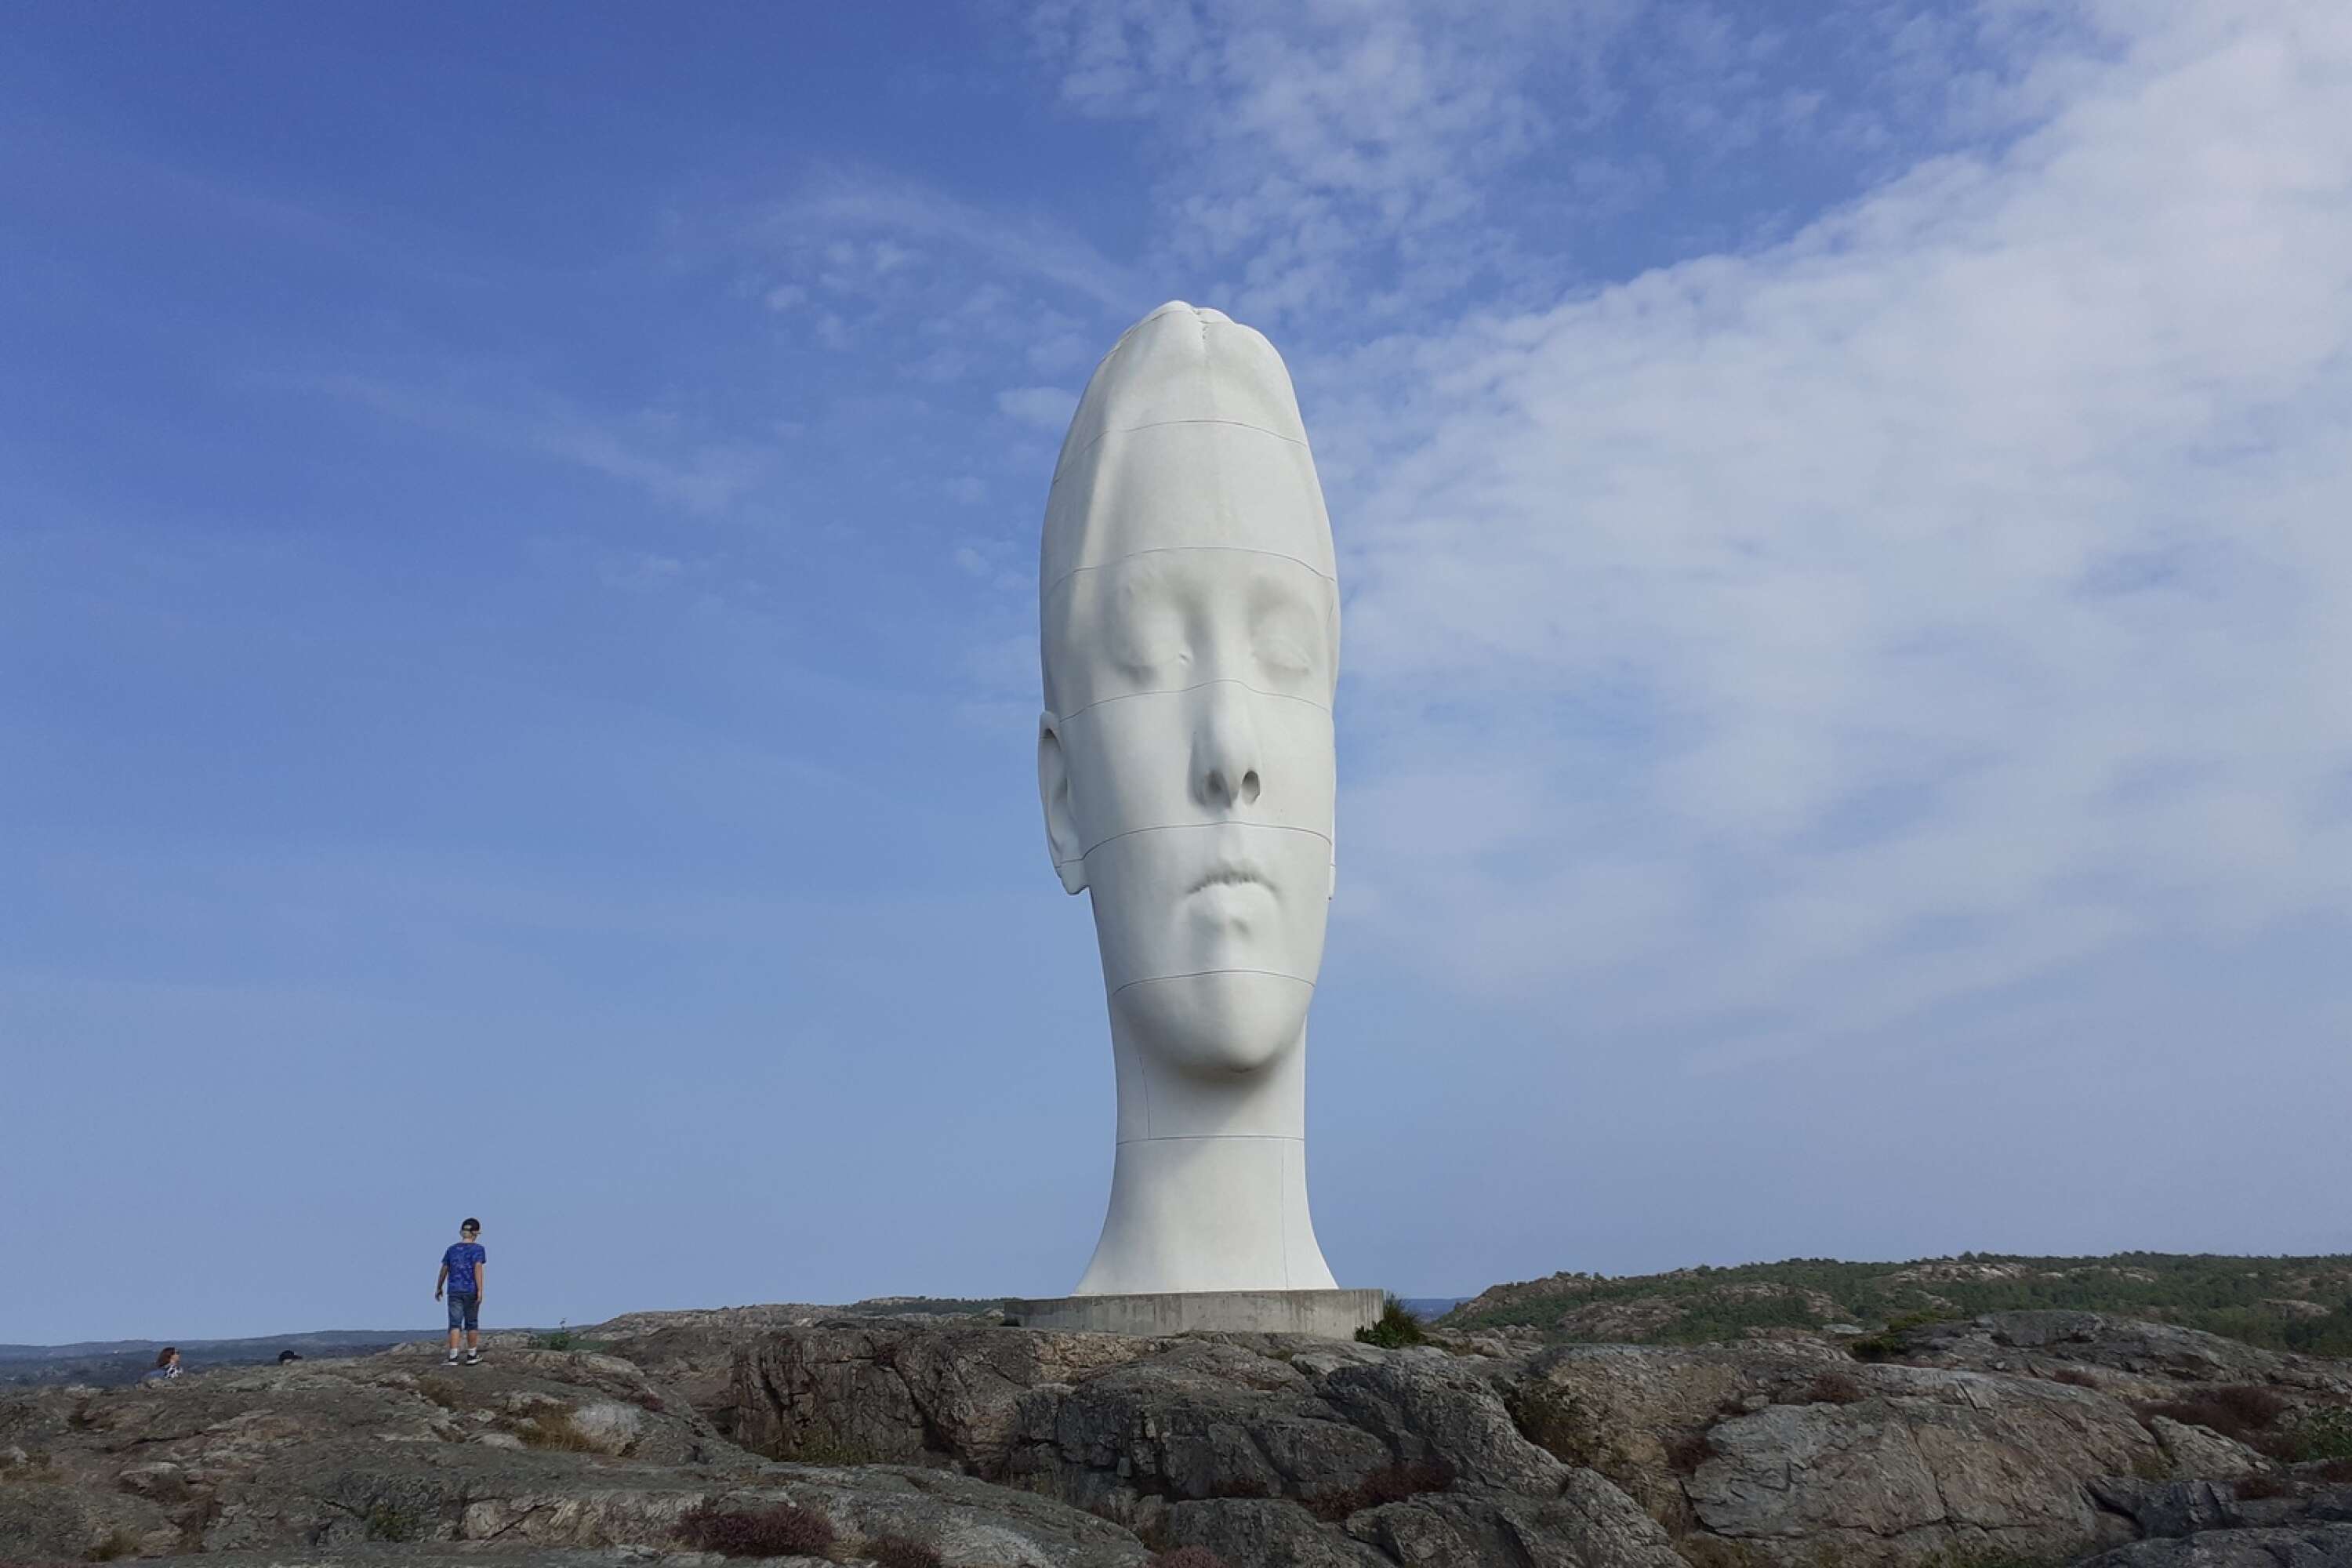 Pilane på Tjörn. Skulpturen Anna är ett landmärke. Jaume Plensa har skapat det gigantiska verket som blivit ett signum för Pilane.